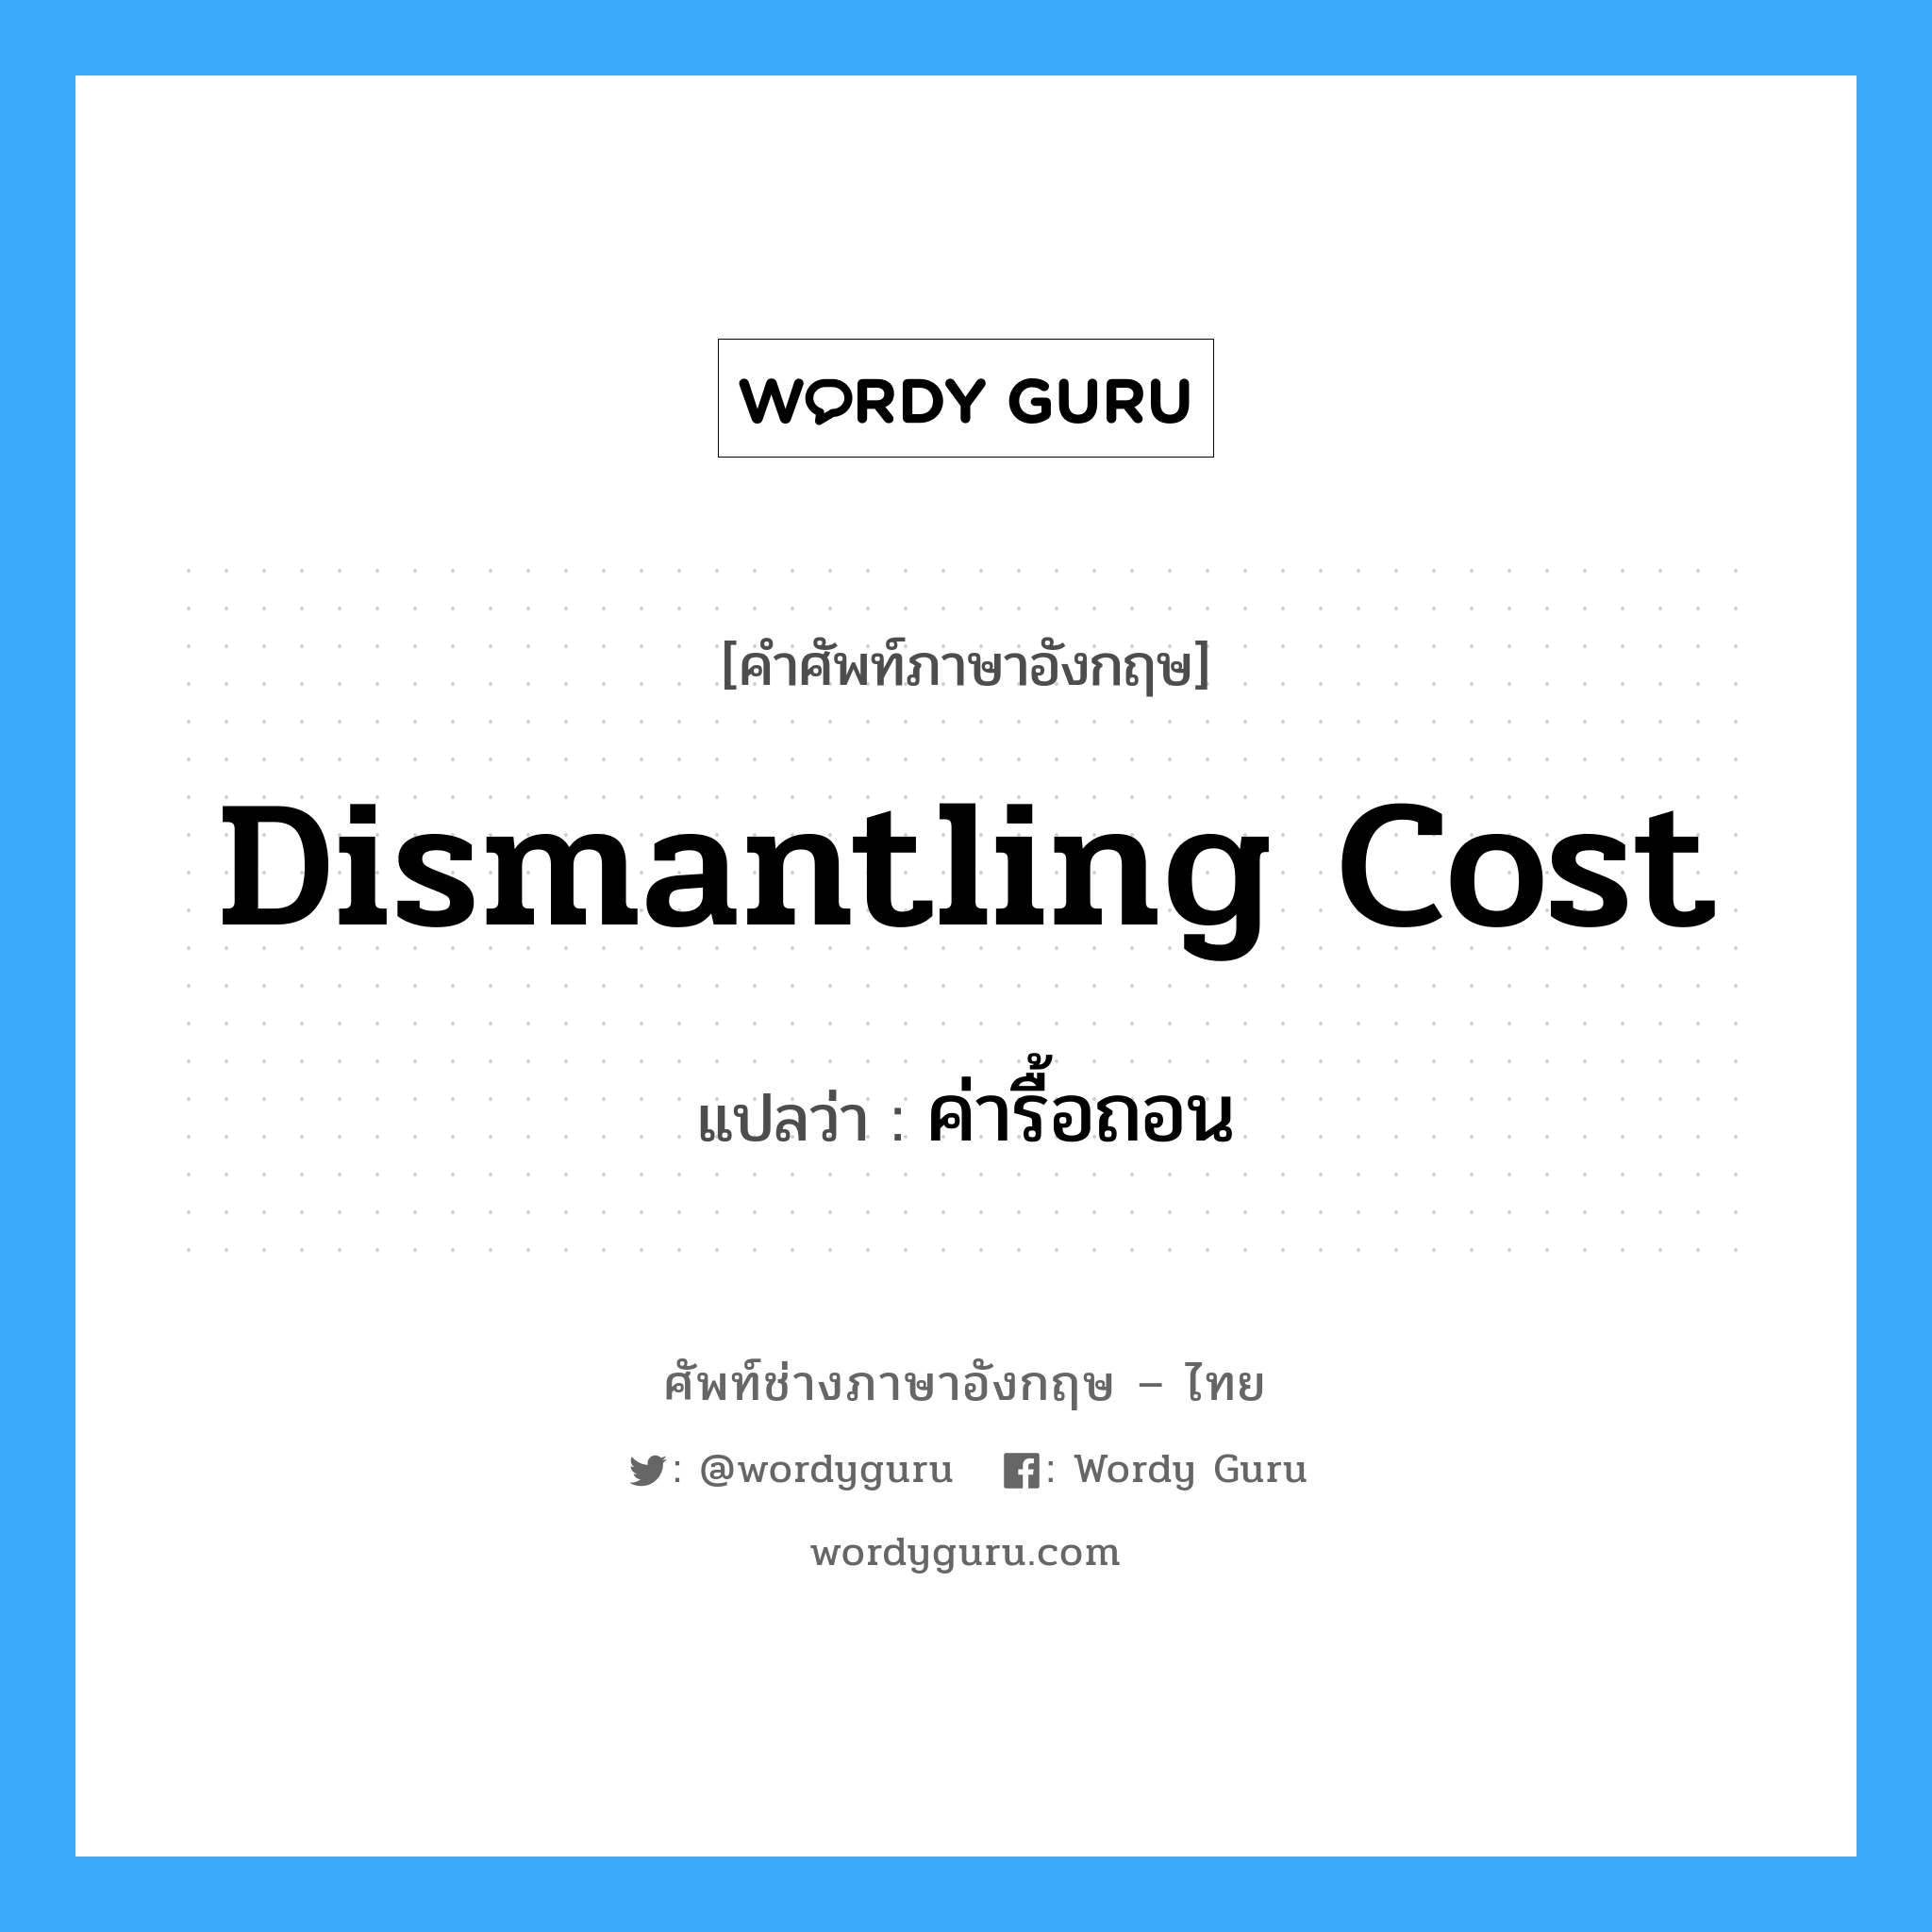 dismantling cost แปลว่า?, คำศัพท์ช่างภาษาอังกฤษ - ไทย dismantling cost คำศัพท์ภาษาอังกฤษ dismantling cost แปลว่า ค่ารื้อถอน